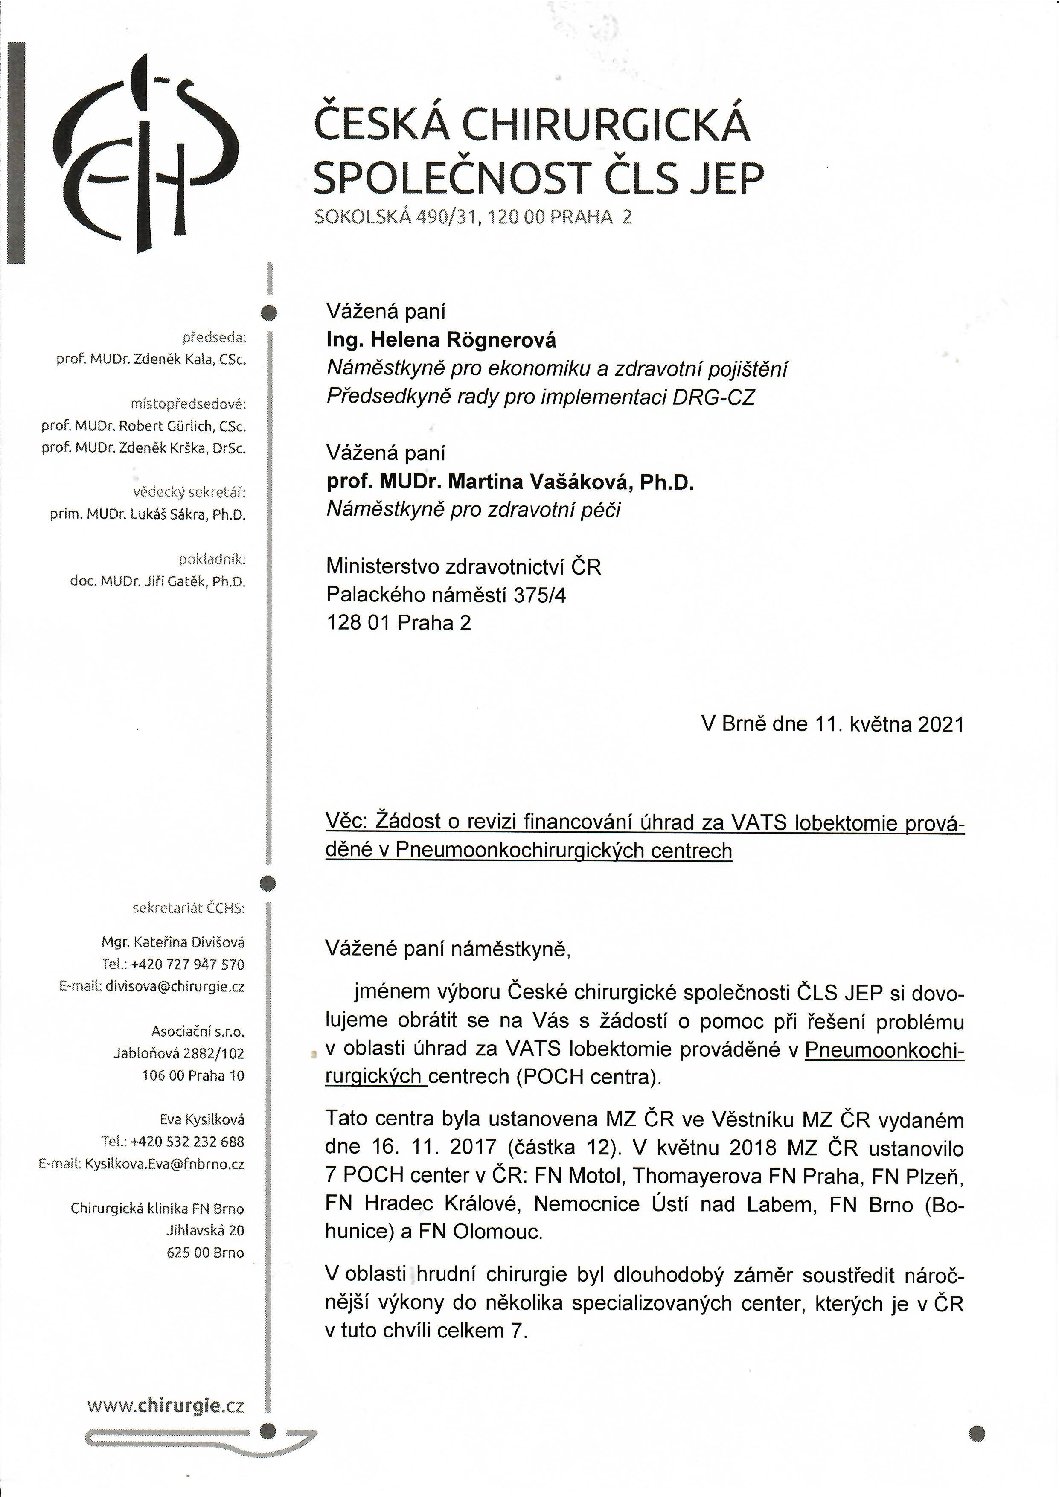 Stanovisko výboru ČCHS ČLS JEP k žádosti MZ ČR o revizi financování úhrad za VATS LE prováděné v POCH centrech (11. 5. 2021)